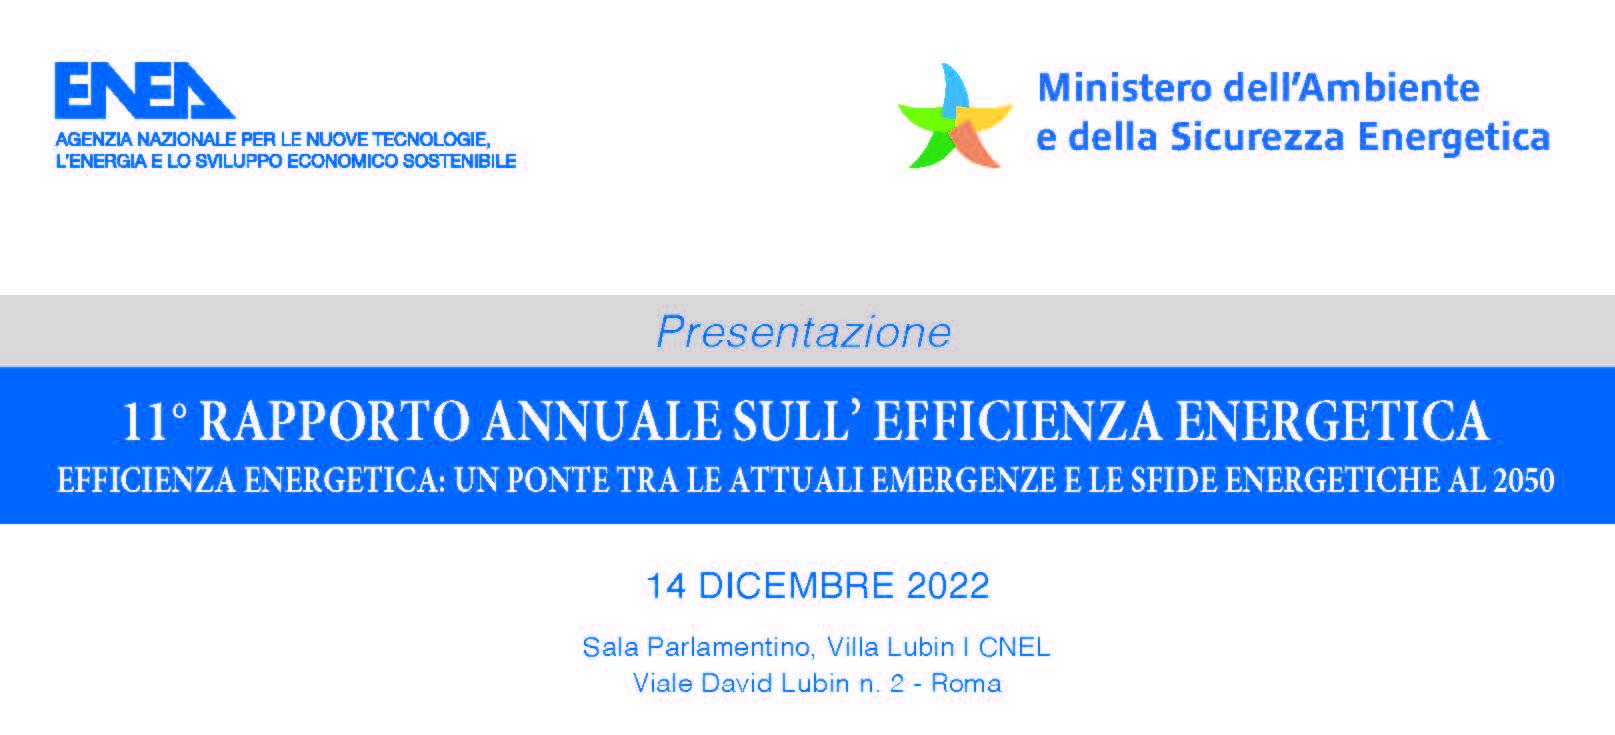 Immagine con i loghi dell'ENEA e del Ministero dell'Ambiente e della Sicurezza Energetica con la scritta presentazione XI “Rapporto annuale sull’efficienza energetica”  